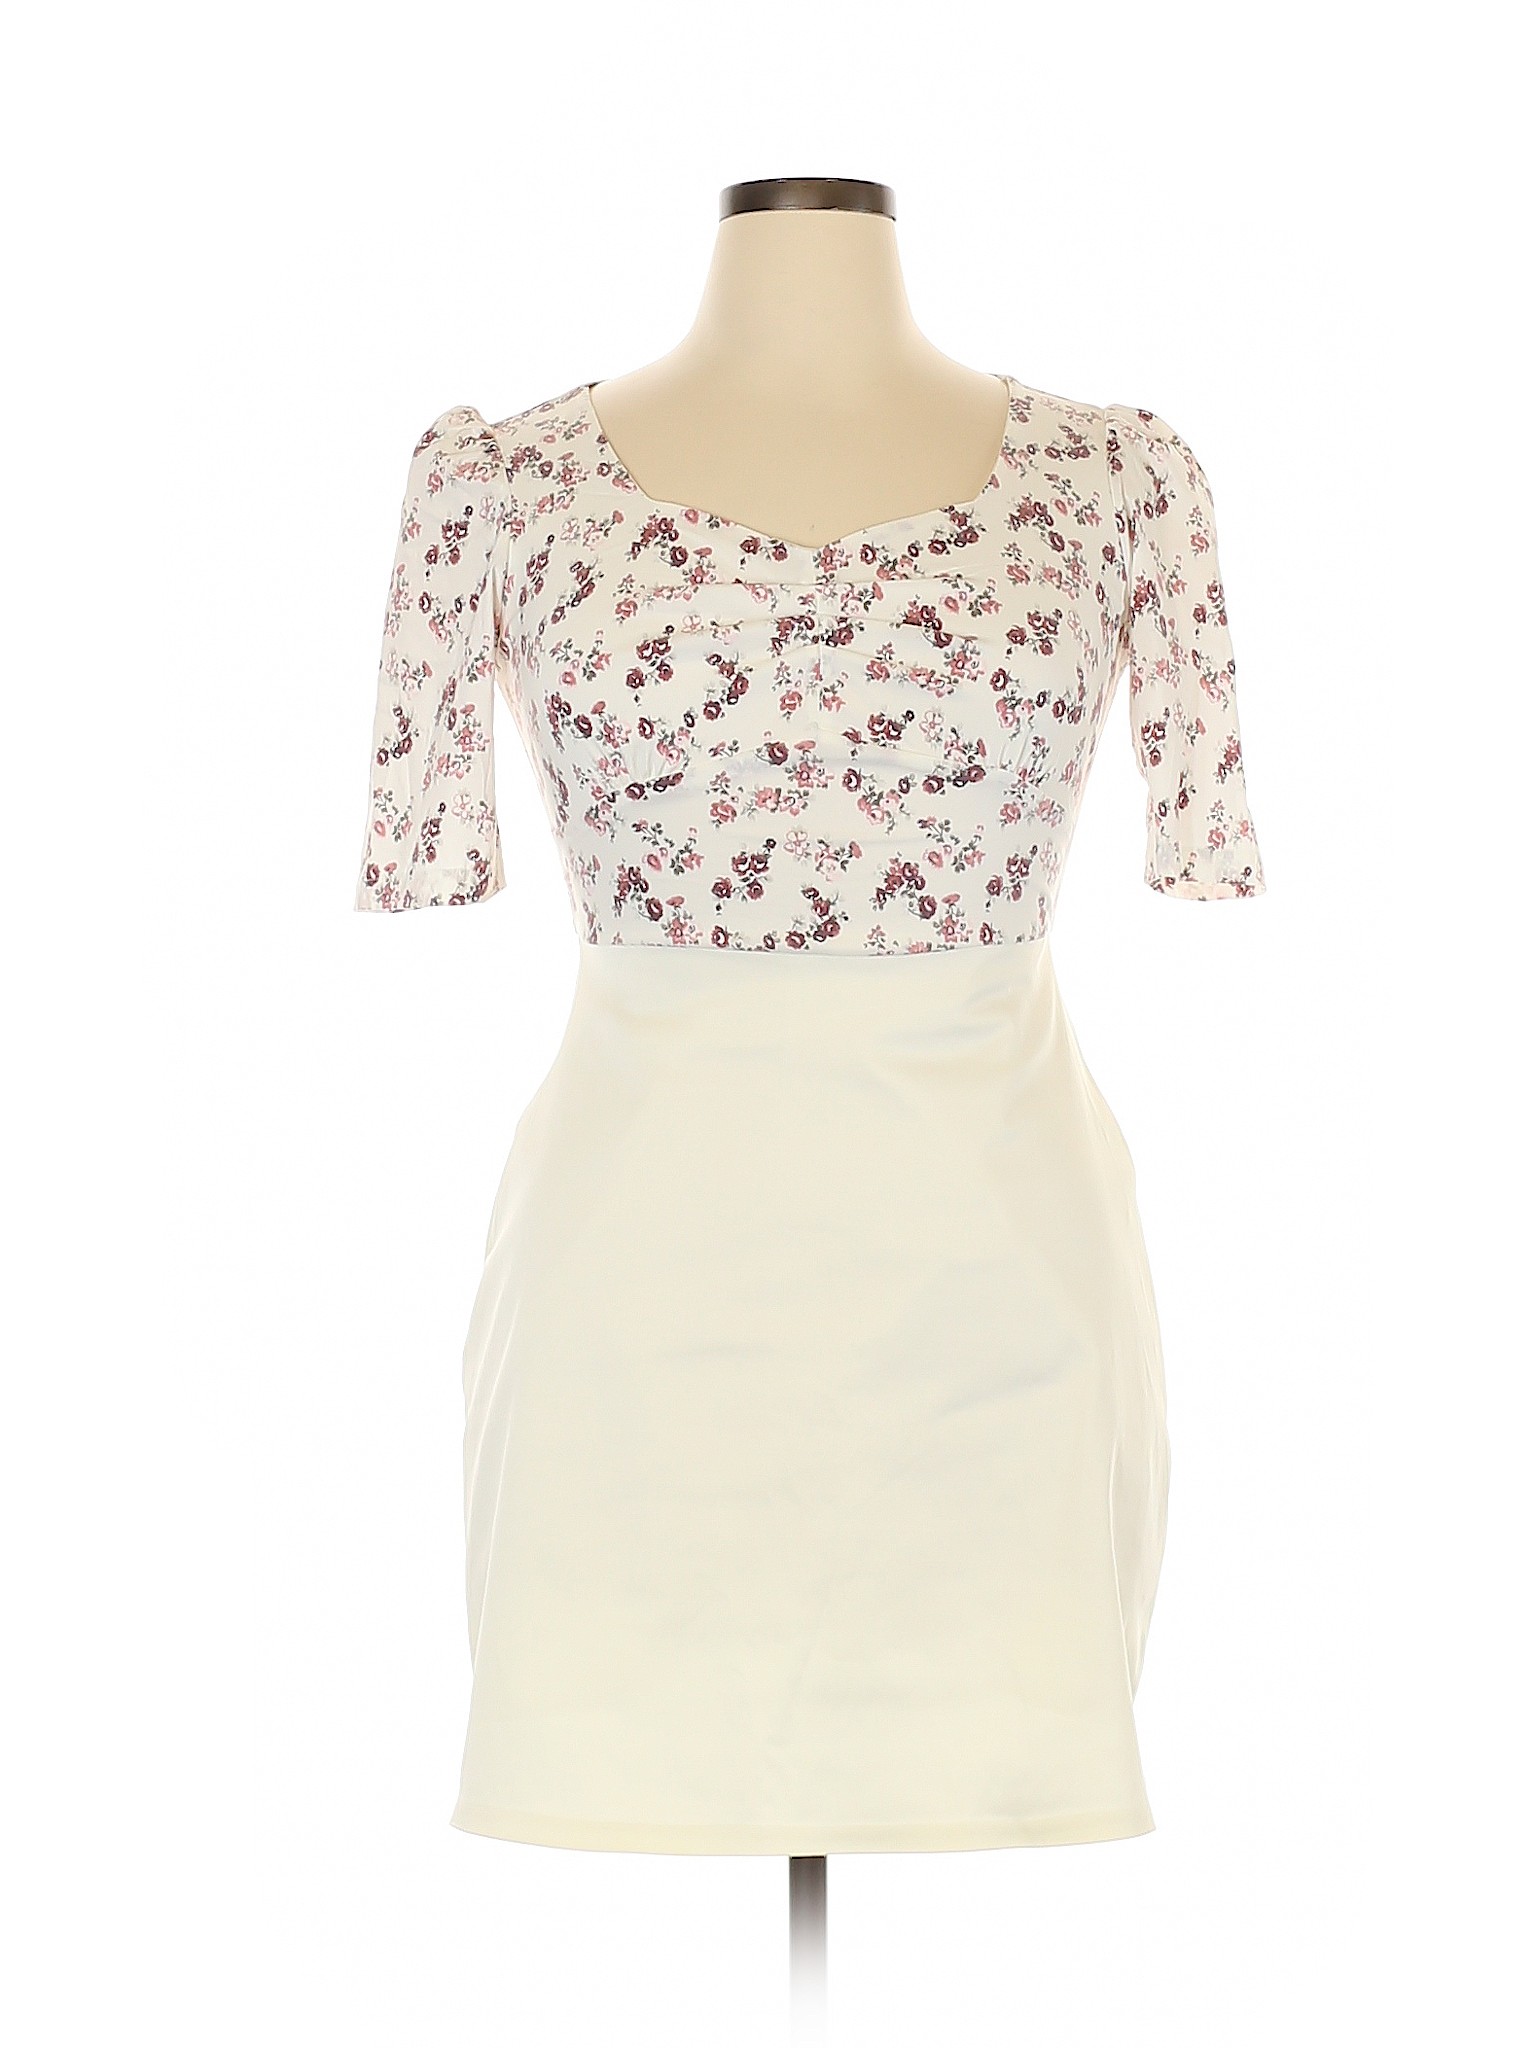 ADL Floral Ivory Cocktail Dress Size XL - 79% off | thredUP